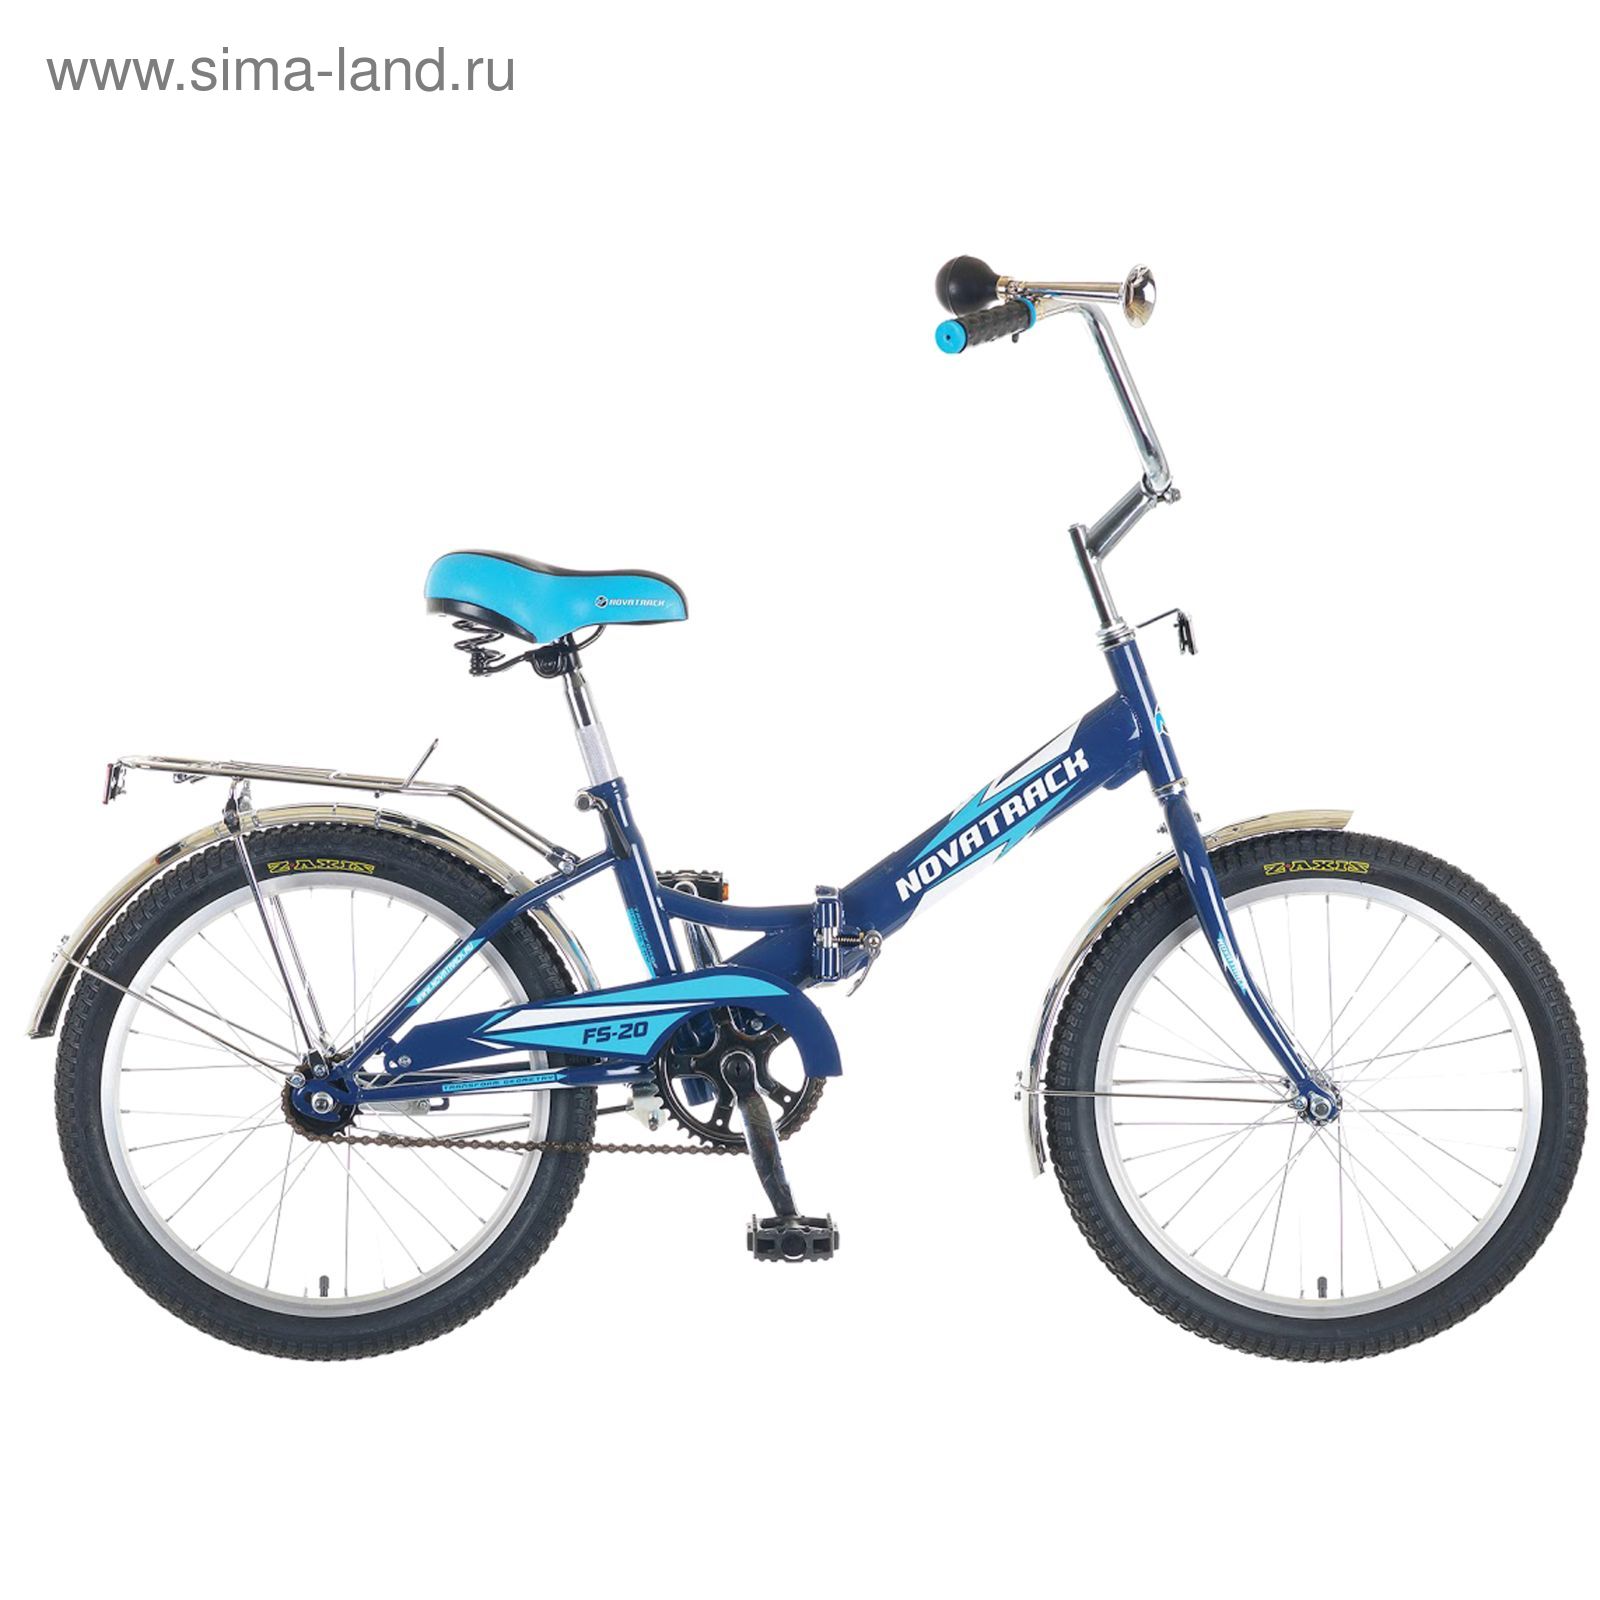 Велосипед 20" Novatrack FS20 короткая база, 2015, 1ск., цвет синий/голубой